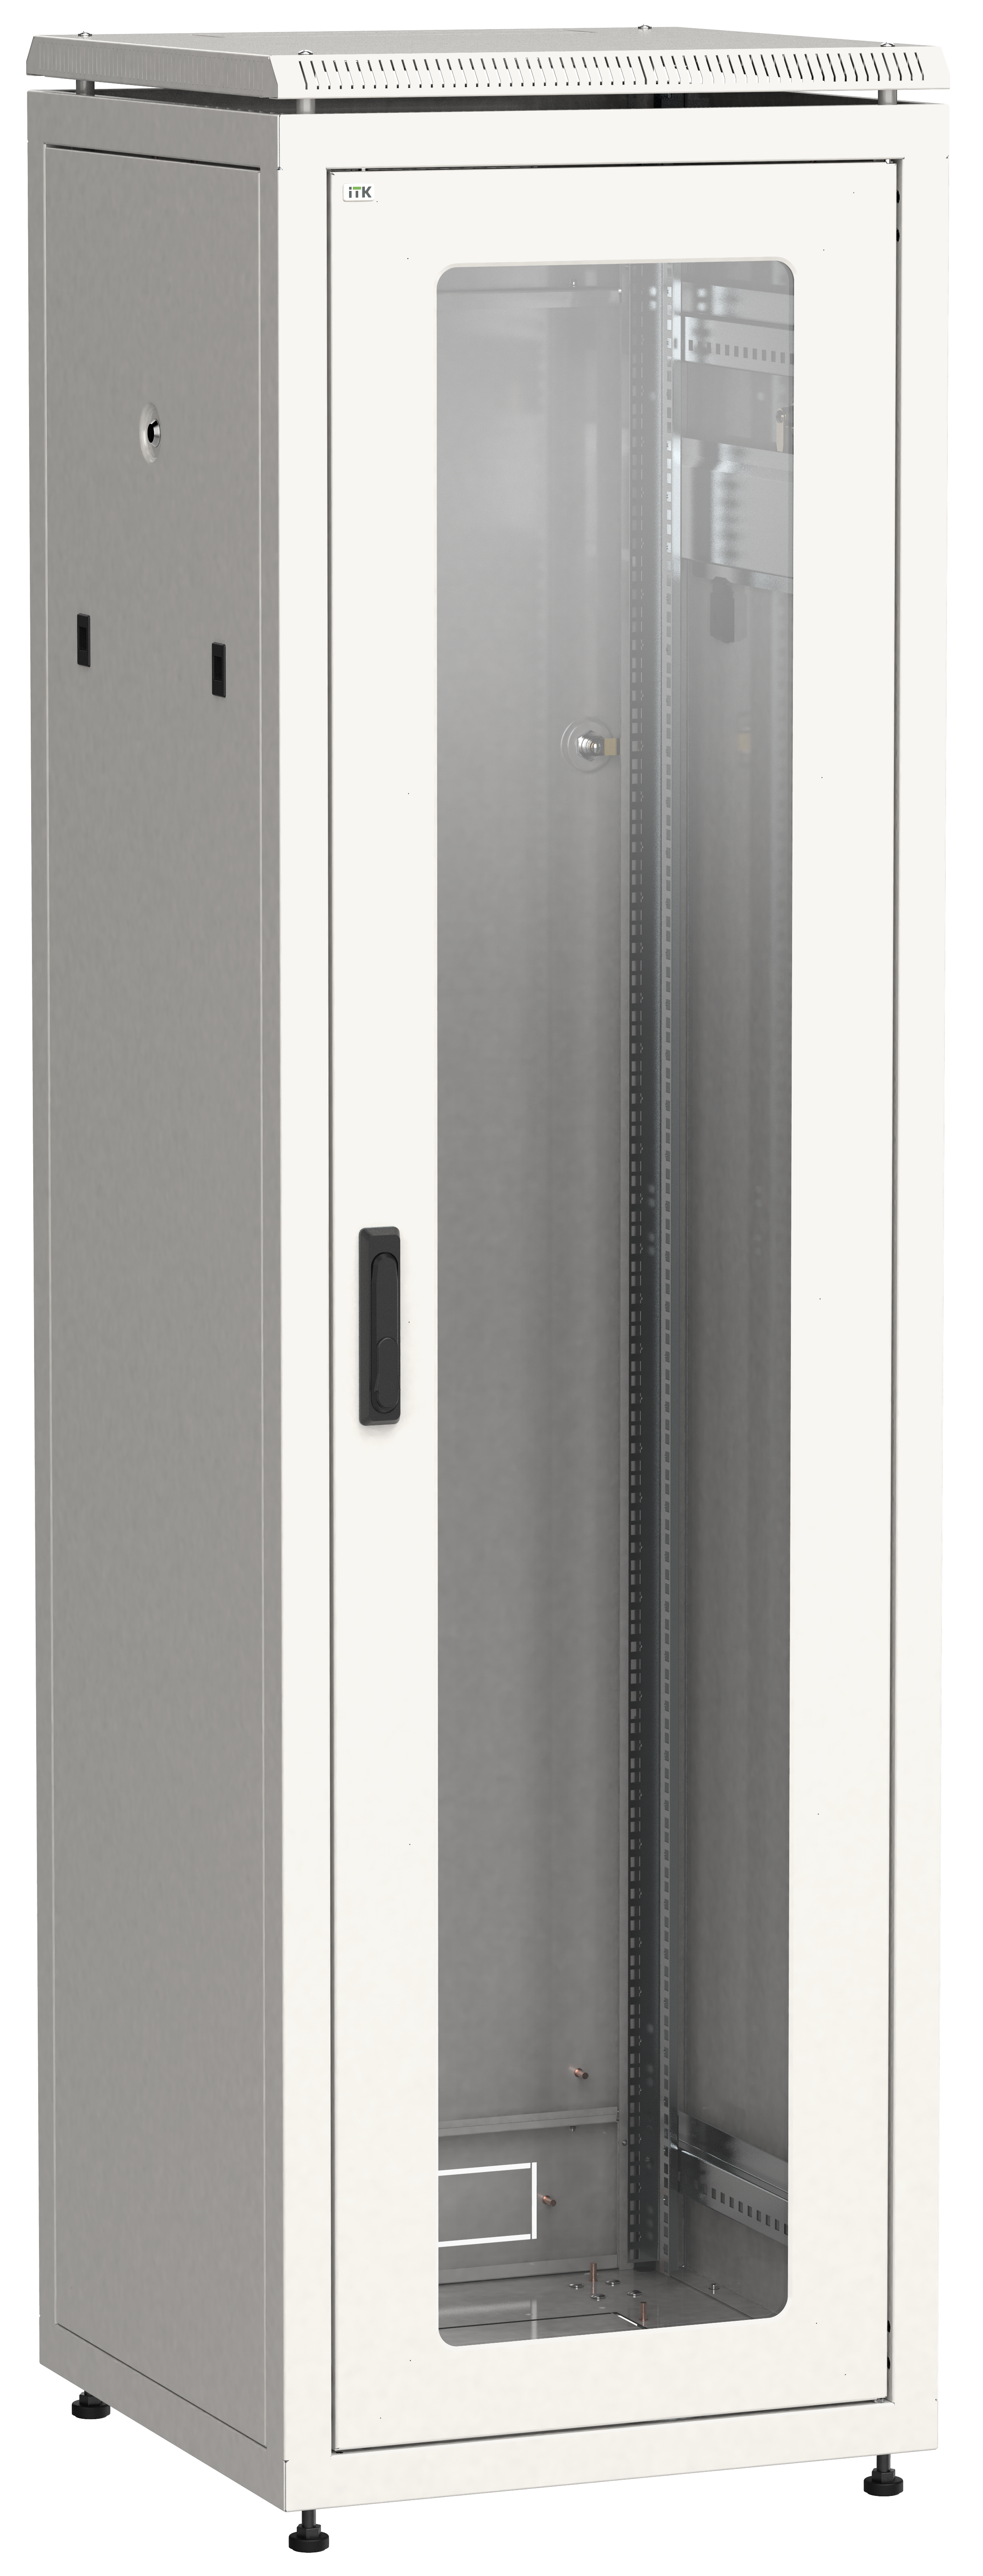 Шкаф телекоммуникационный напольный 33U 600x600 мм, стекло/металл, серый, разборный, ITK LINEA N (LN35-33U66-G)